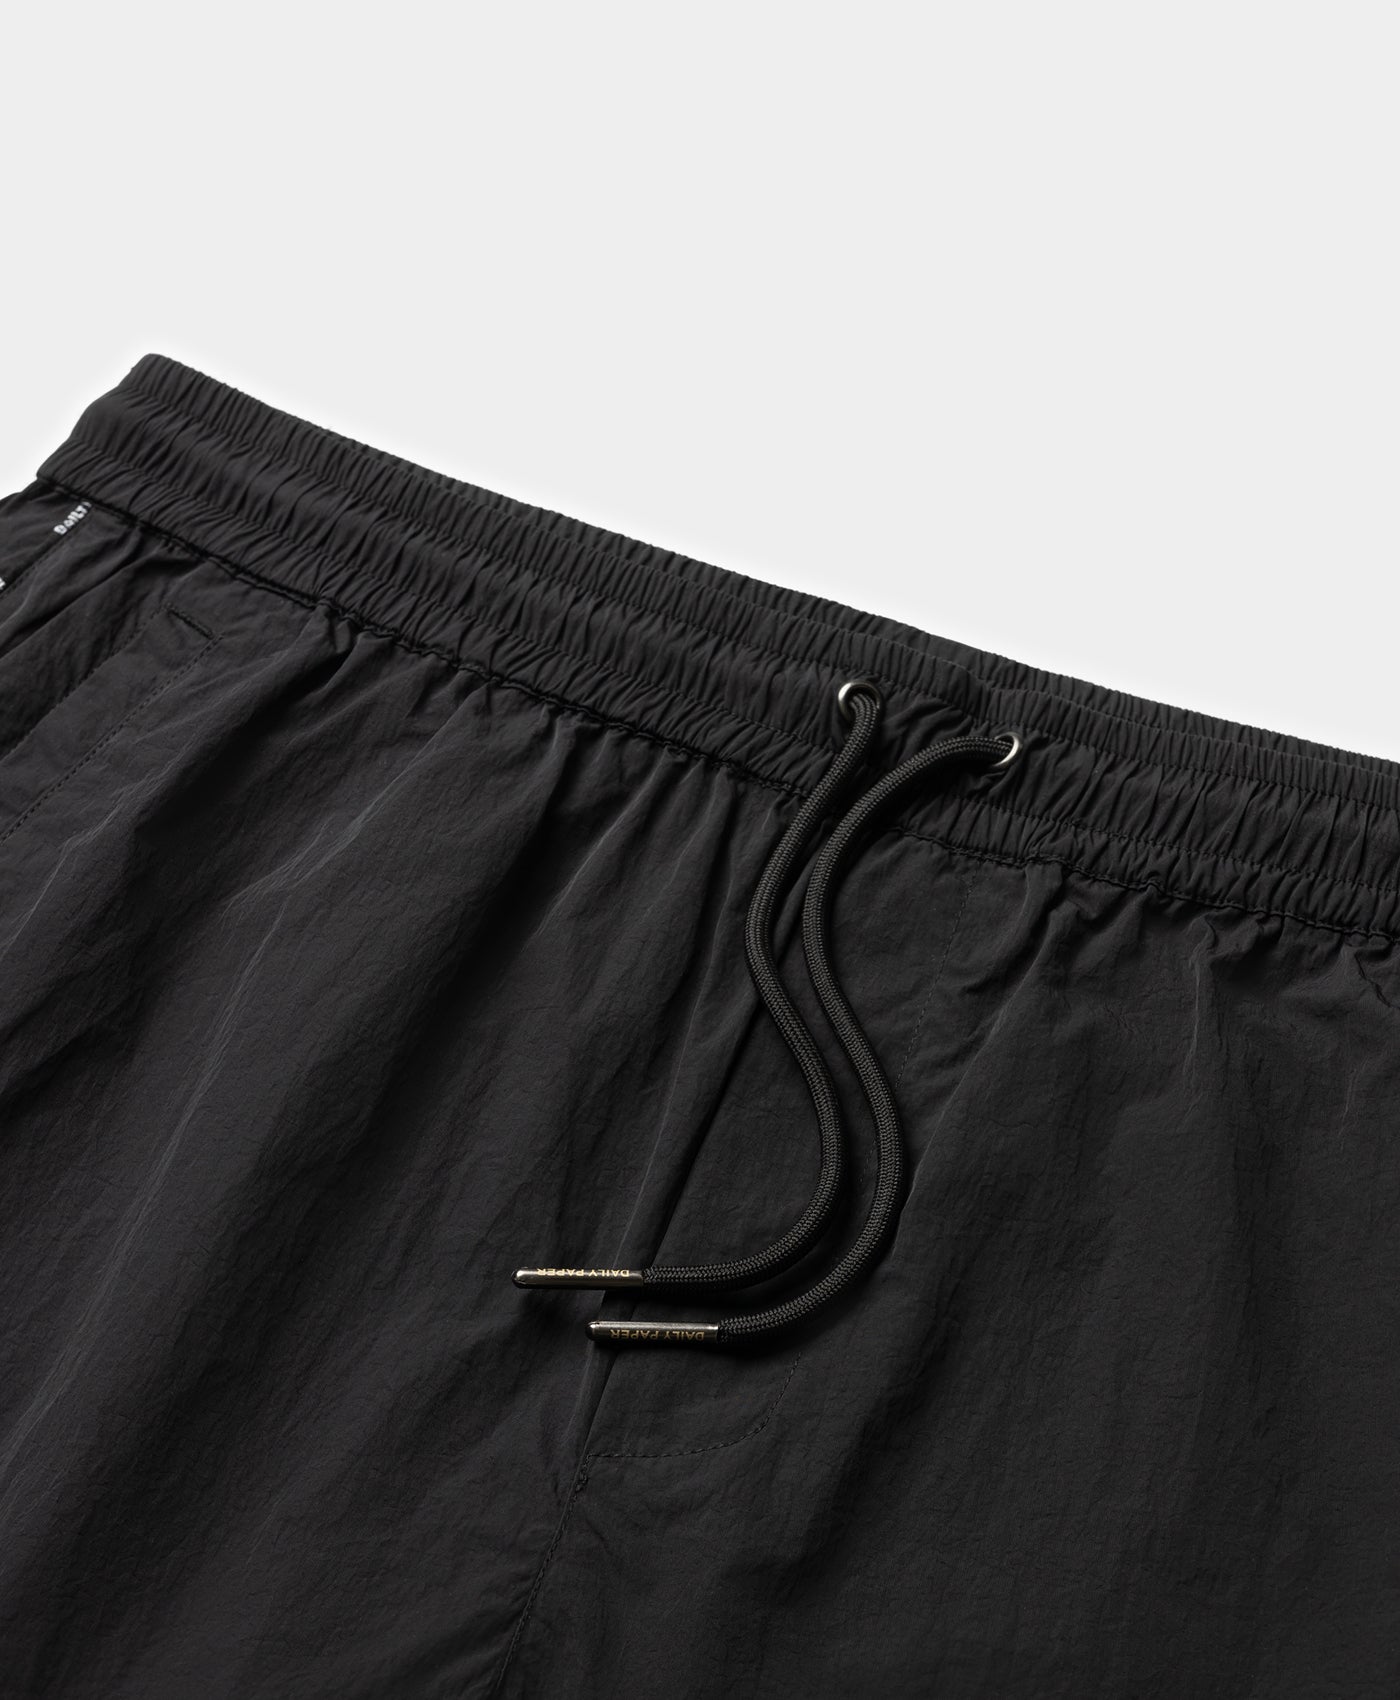 DP - Black Mehani Shorts - Packshot